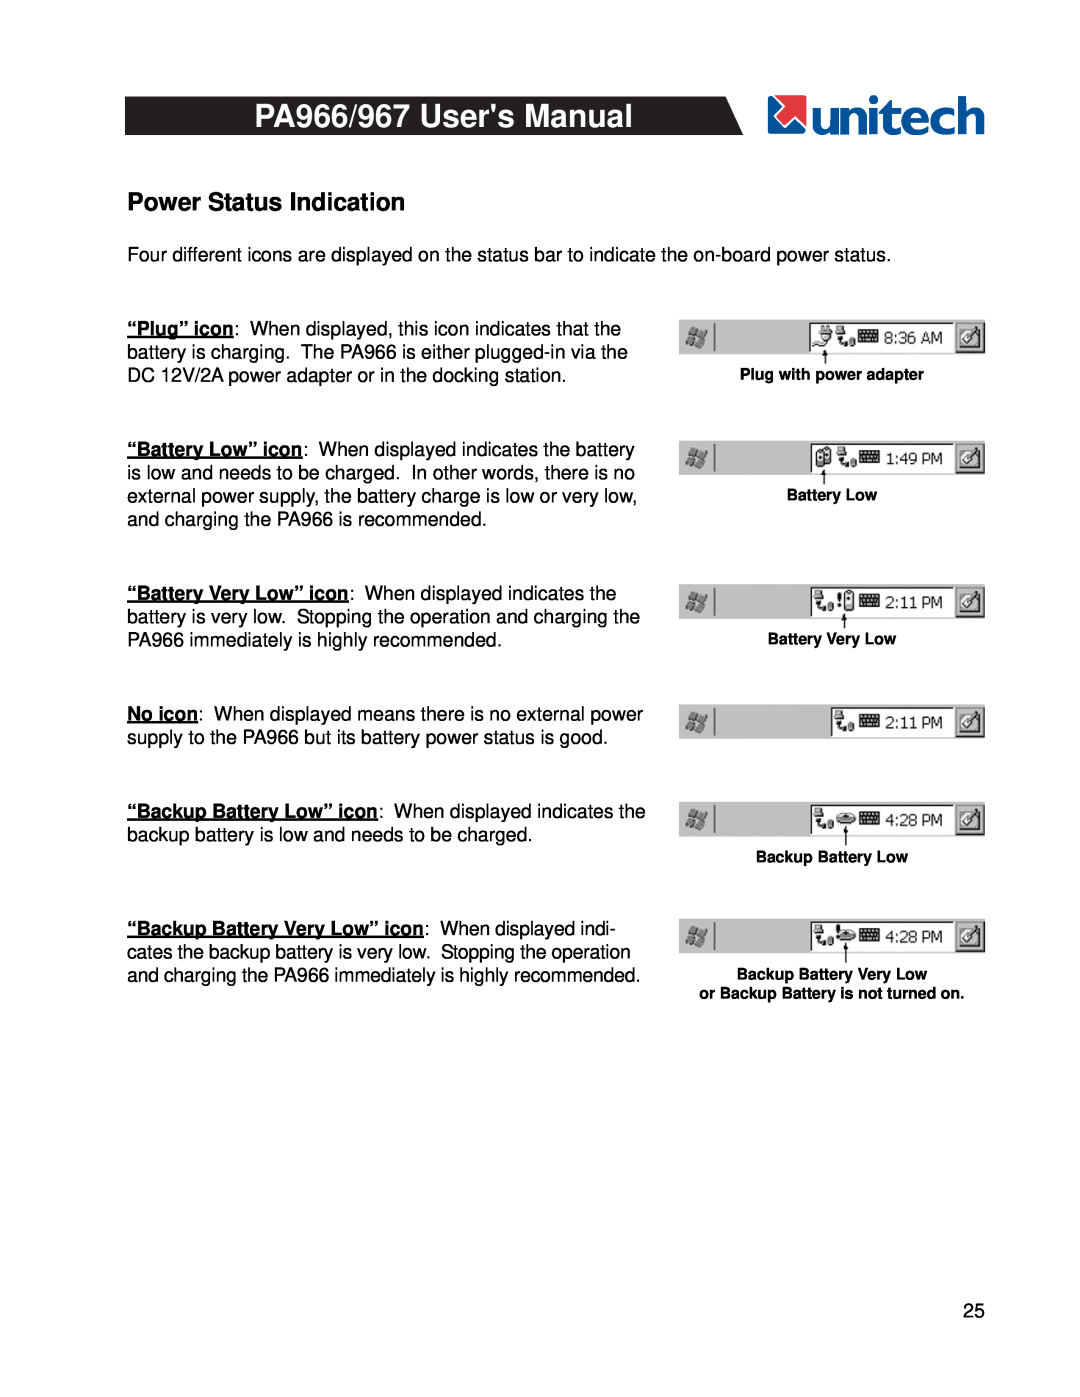 Unitech PA966, PA967 user manual Power Status Indication 